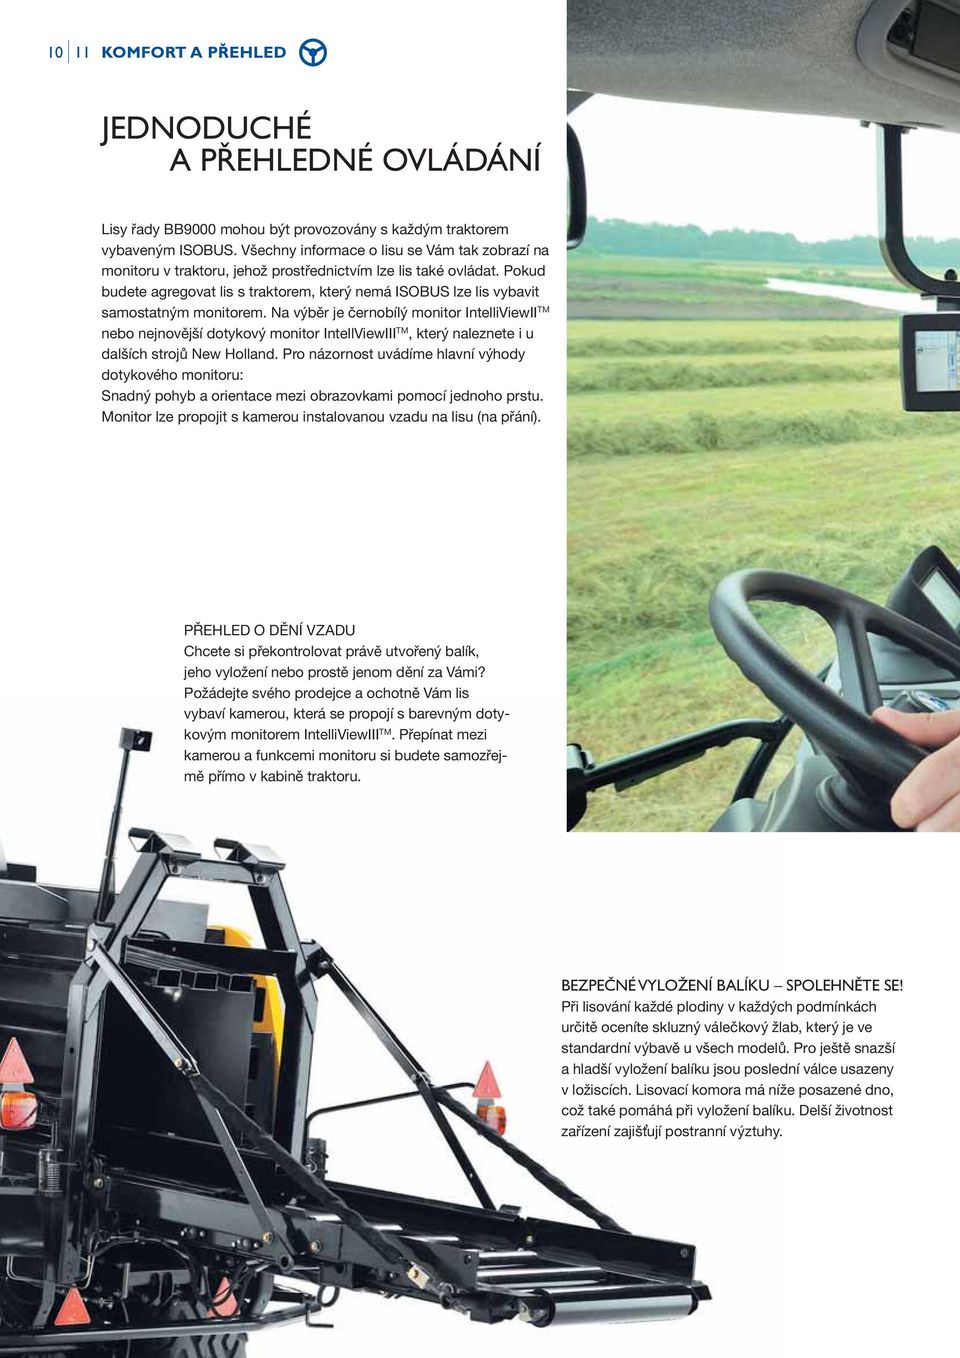 Pokud budete agregovat lis s traktorem, který nemá ISOBUS lze lis vybavit samostatným monitorem.